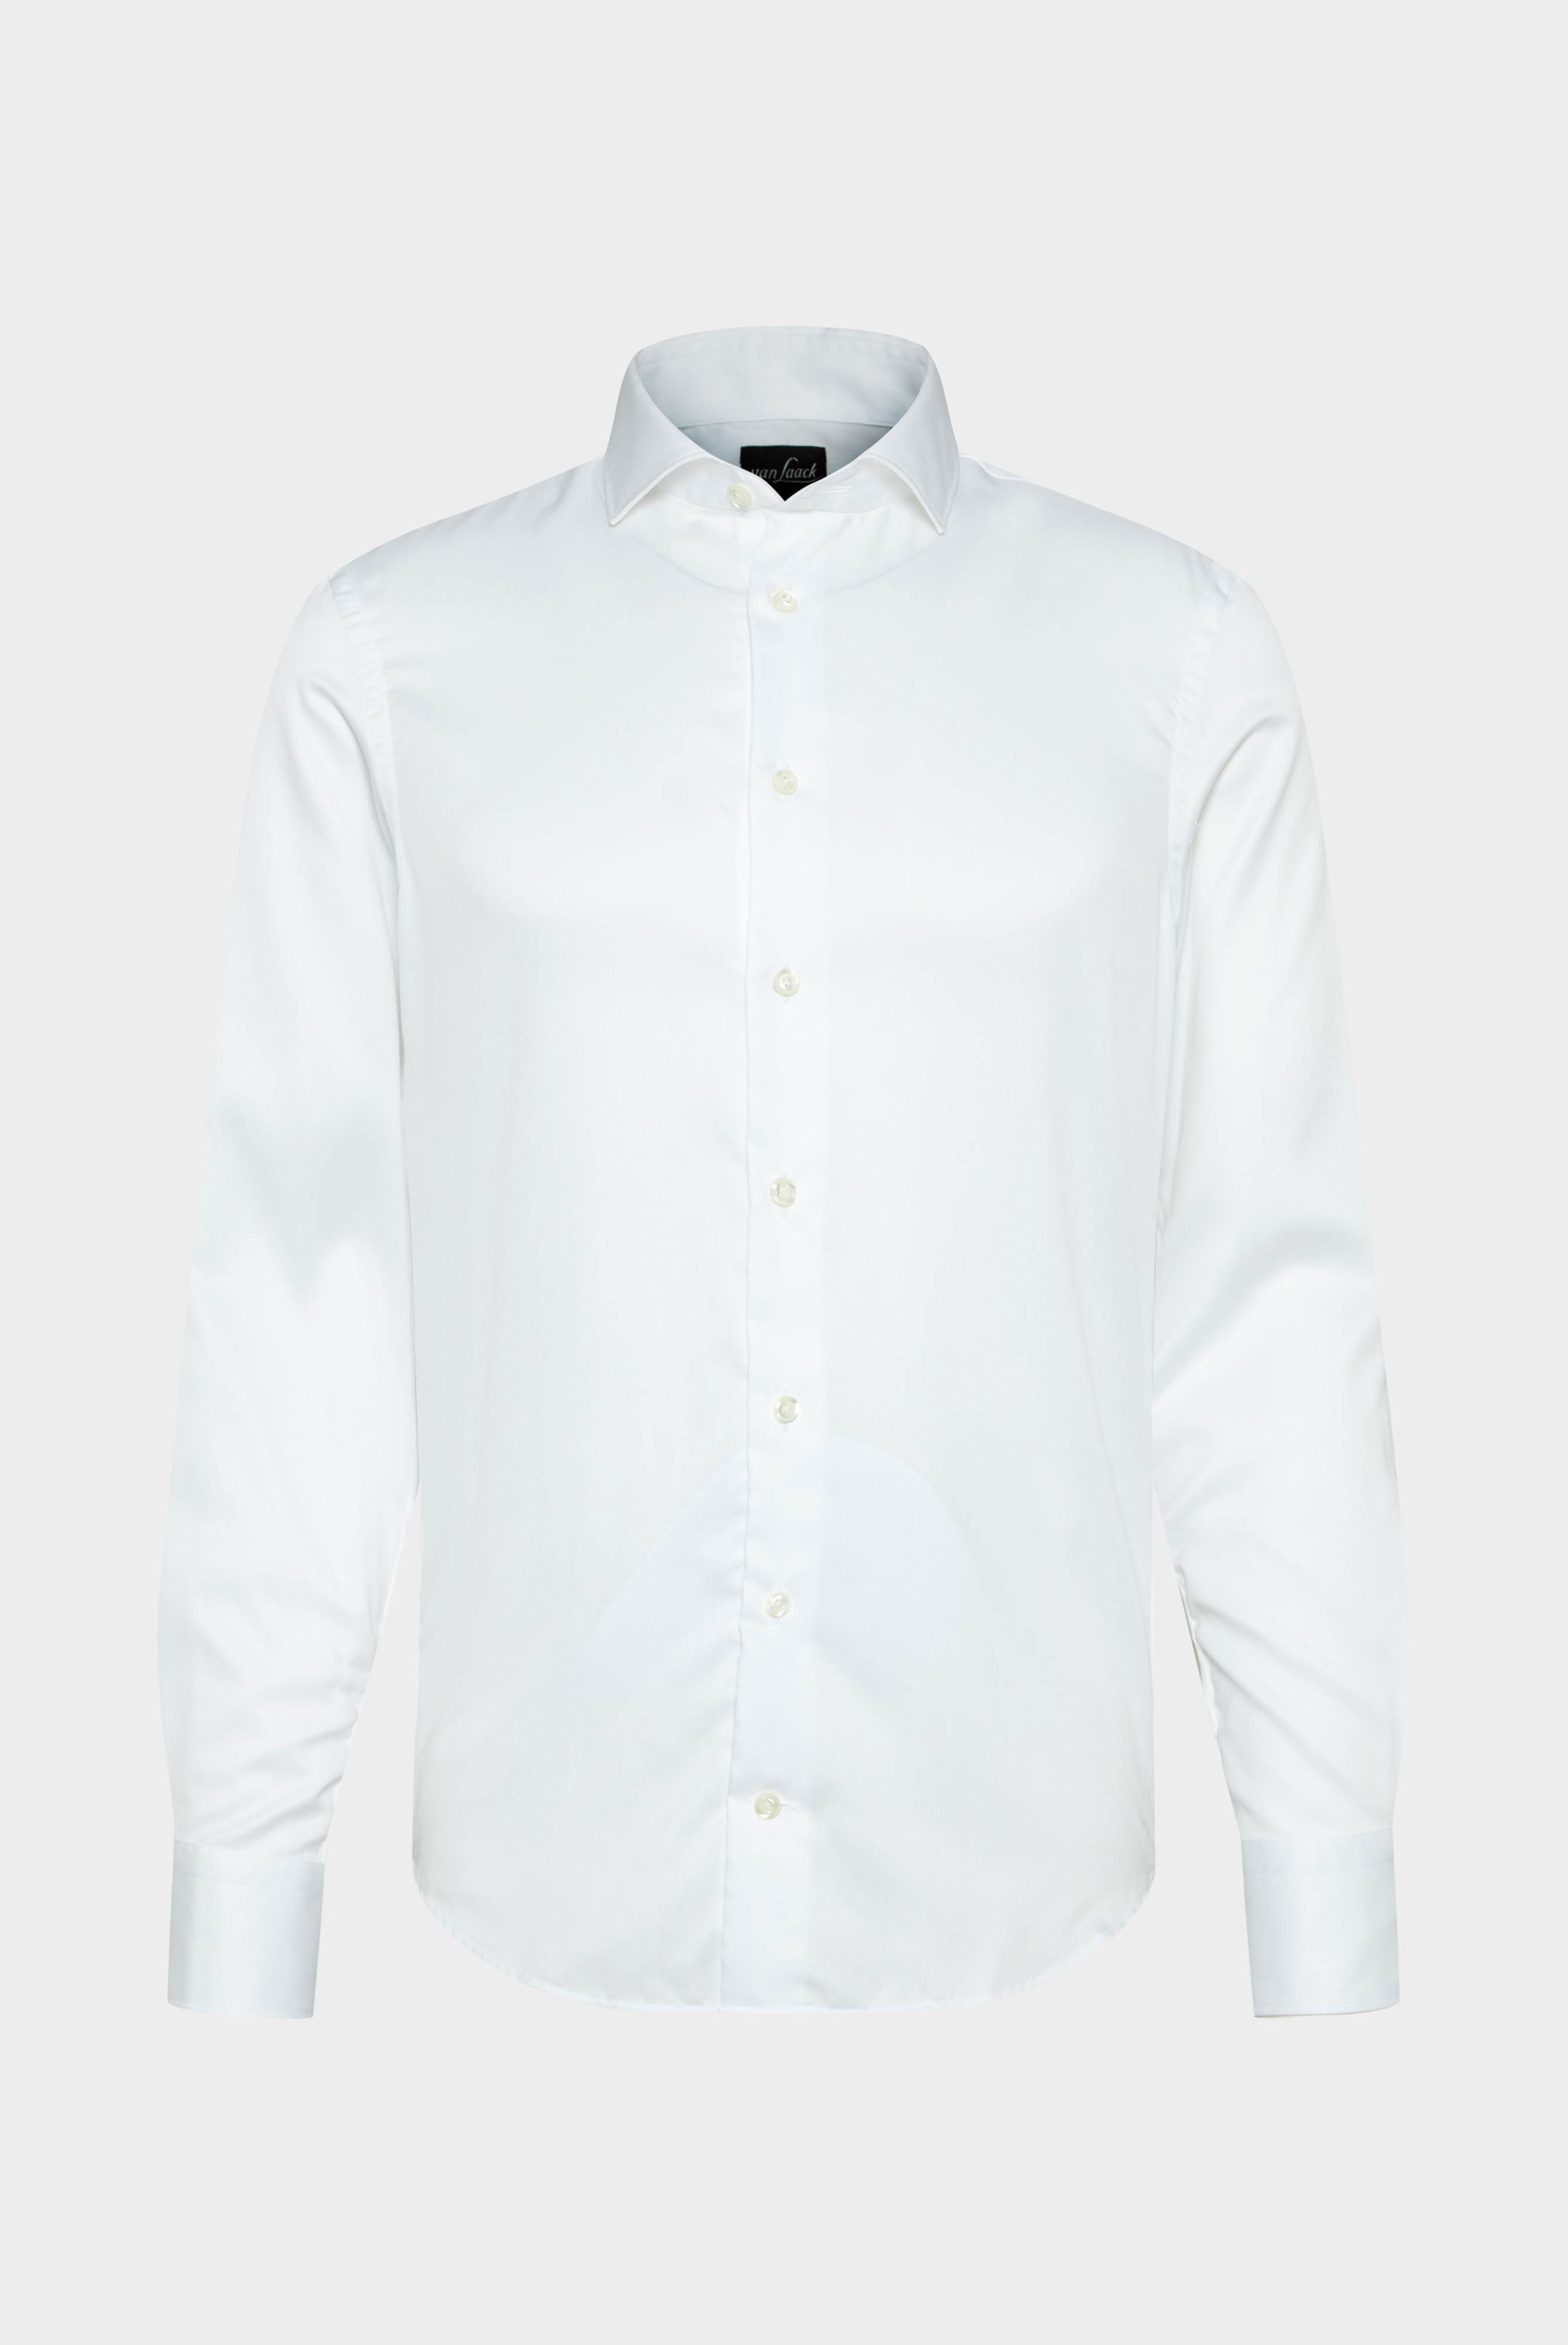 Bügelleichte Hemden+Bügelfreies Hybridshirt mit Jerseyeinsatz Slim Fit+20.2553.0F.132241.000.43